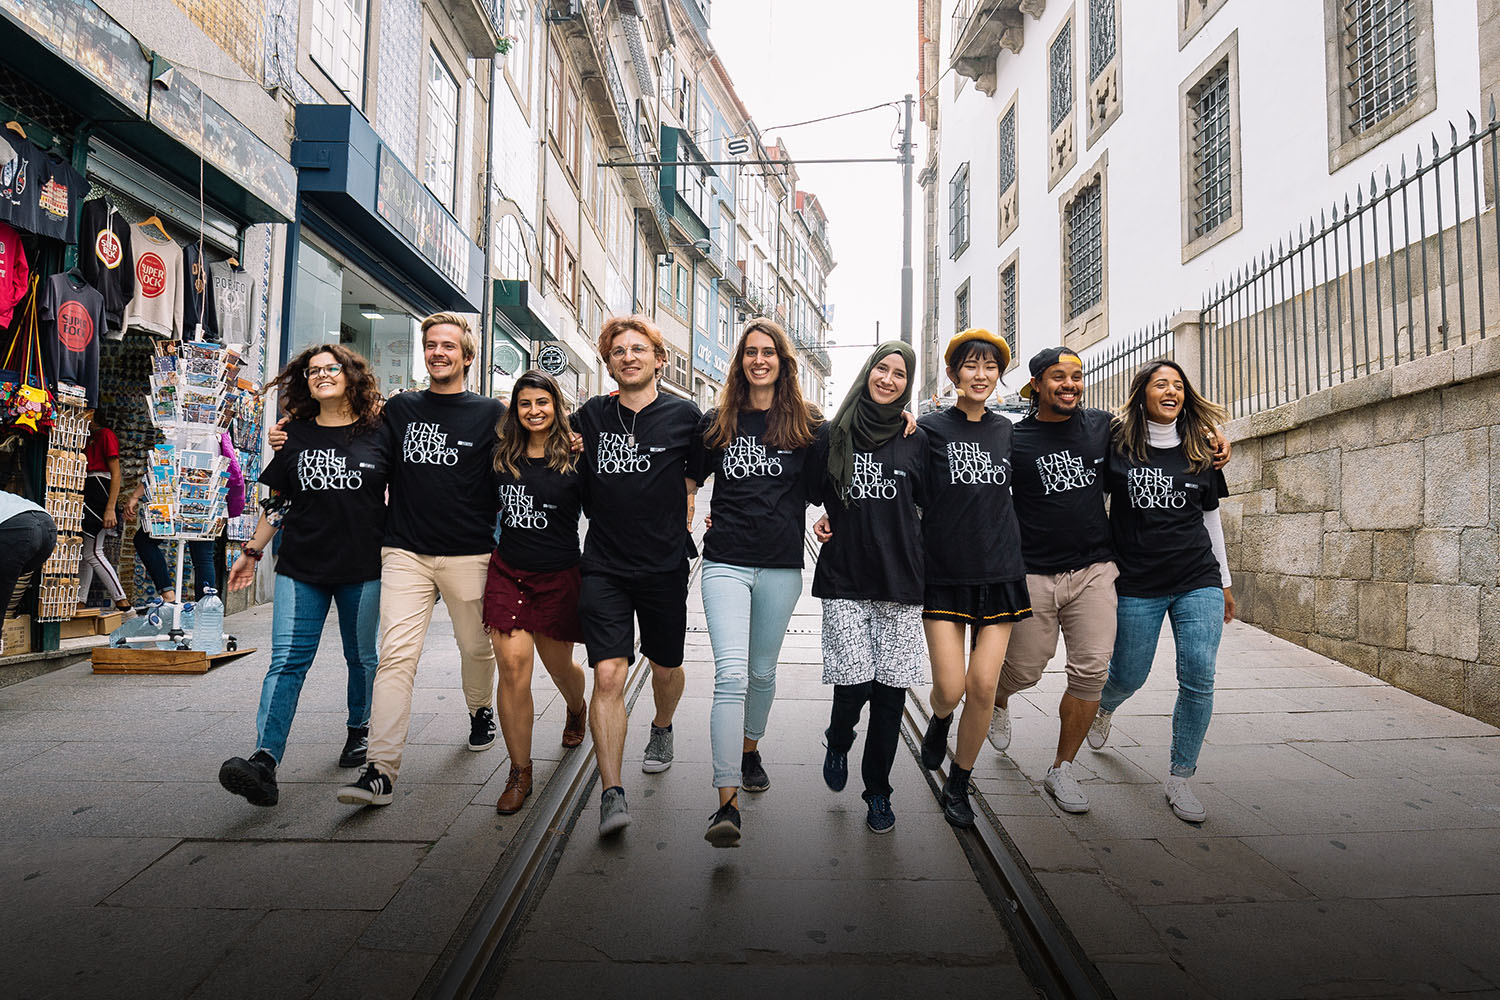 U.Porto leva estudantes de mobilidade à descoberta da cidade